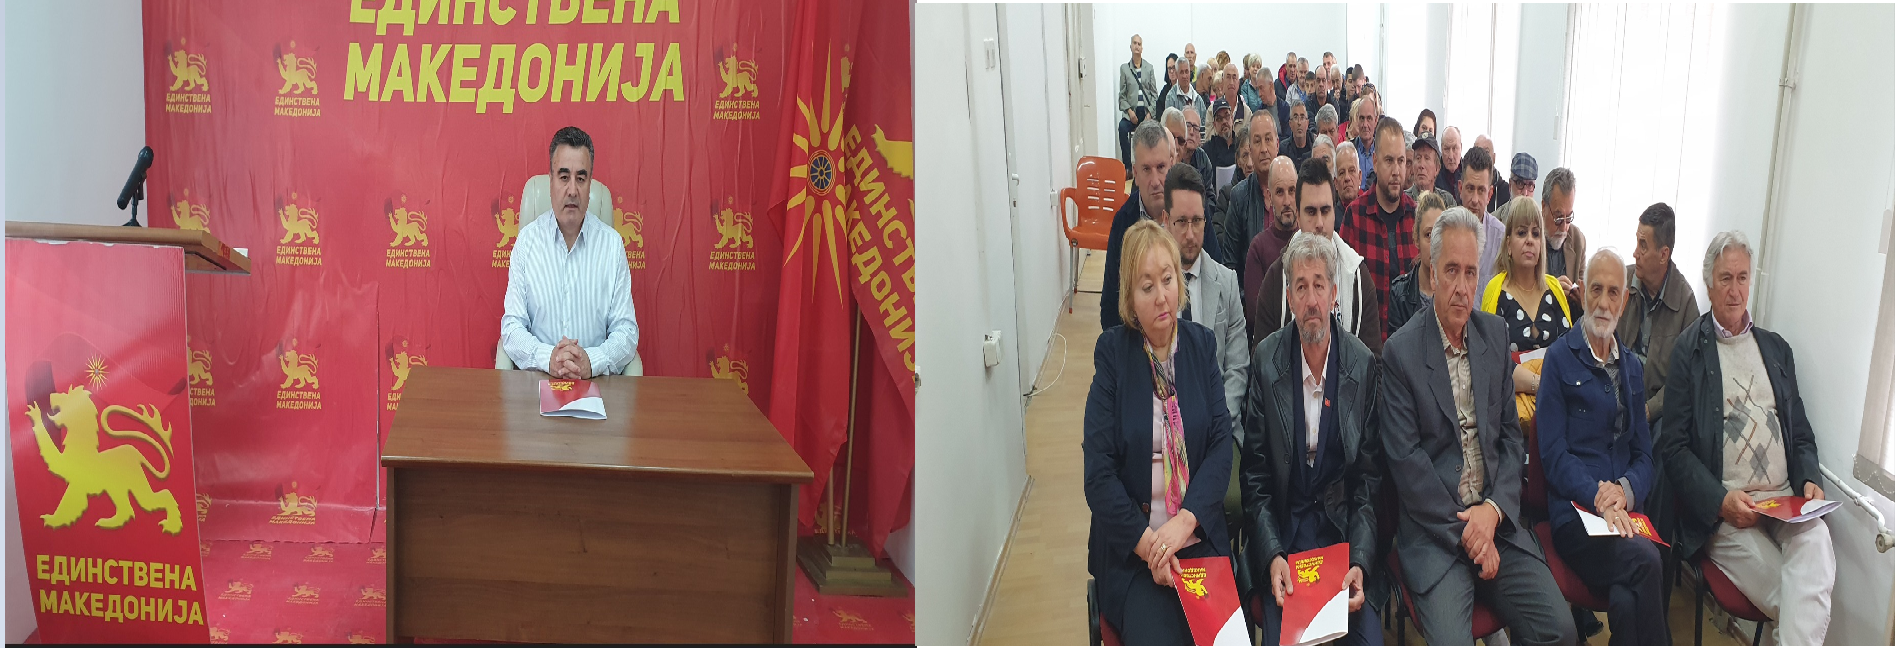 Централниот комитет на Единствена Македонија донесе одлука за пререгистрација на партијата